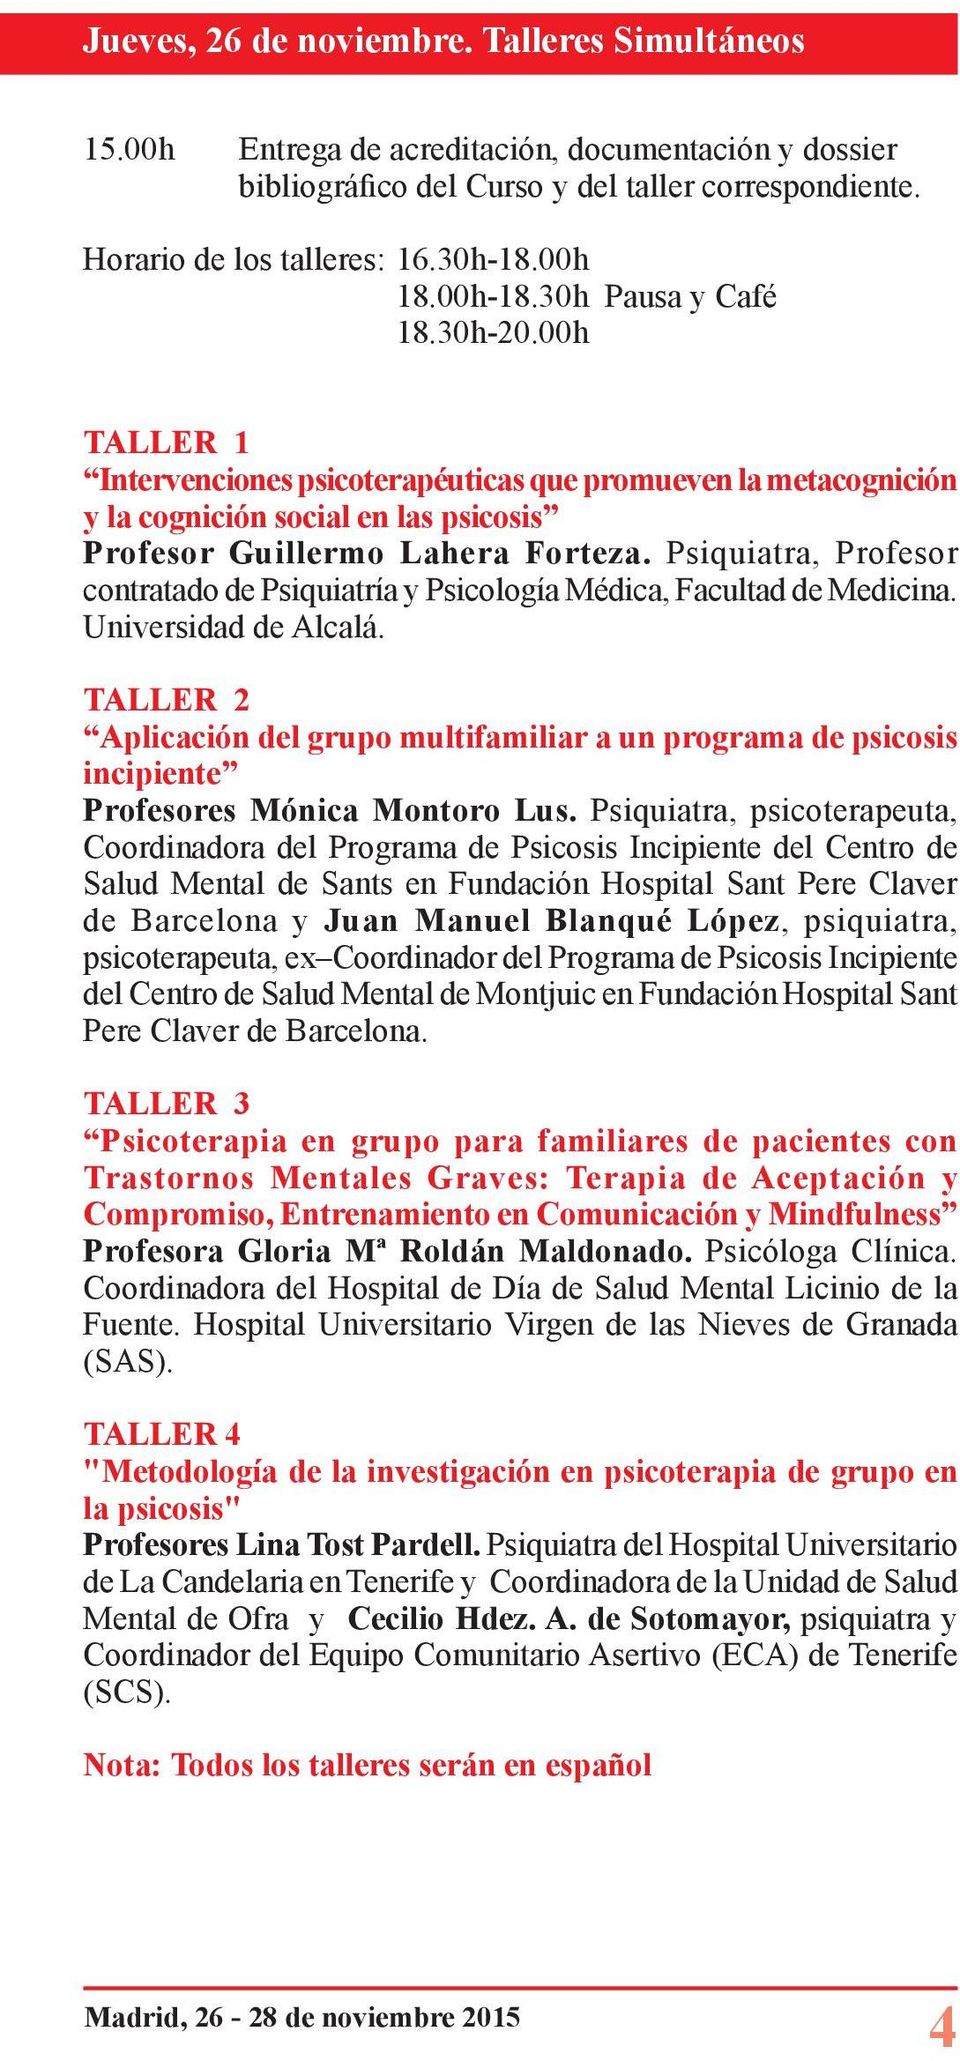 Psiquiatra, Profesor contratado de Psiquiatría y Psicología Médica, Facultad de Medicina. Universidad de Alcalá.